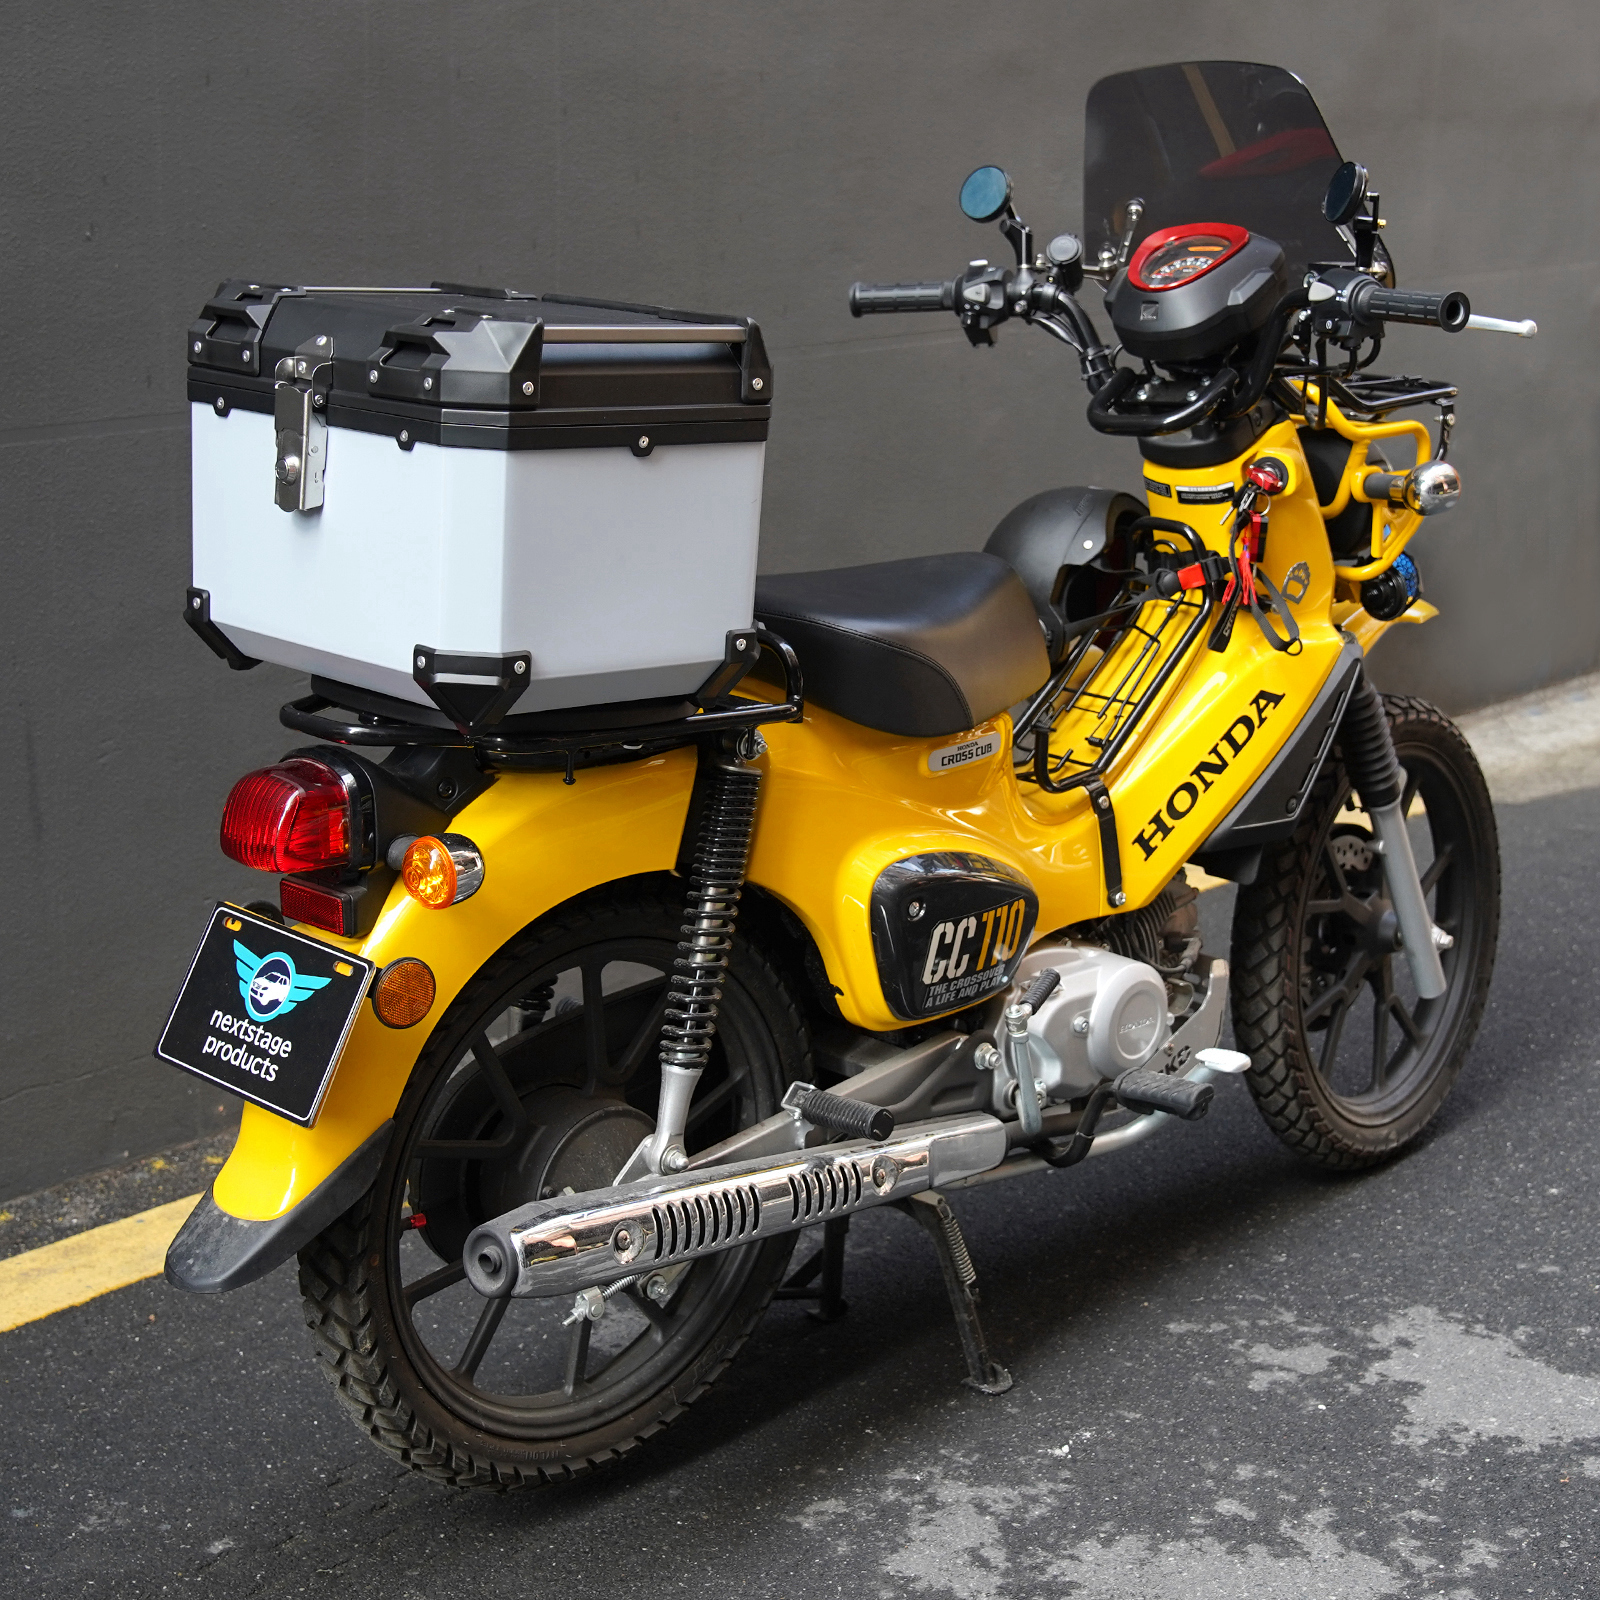 45L 大容量 リアボックス バイク バイク用 ABS製 スーパーカブ 